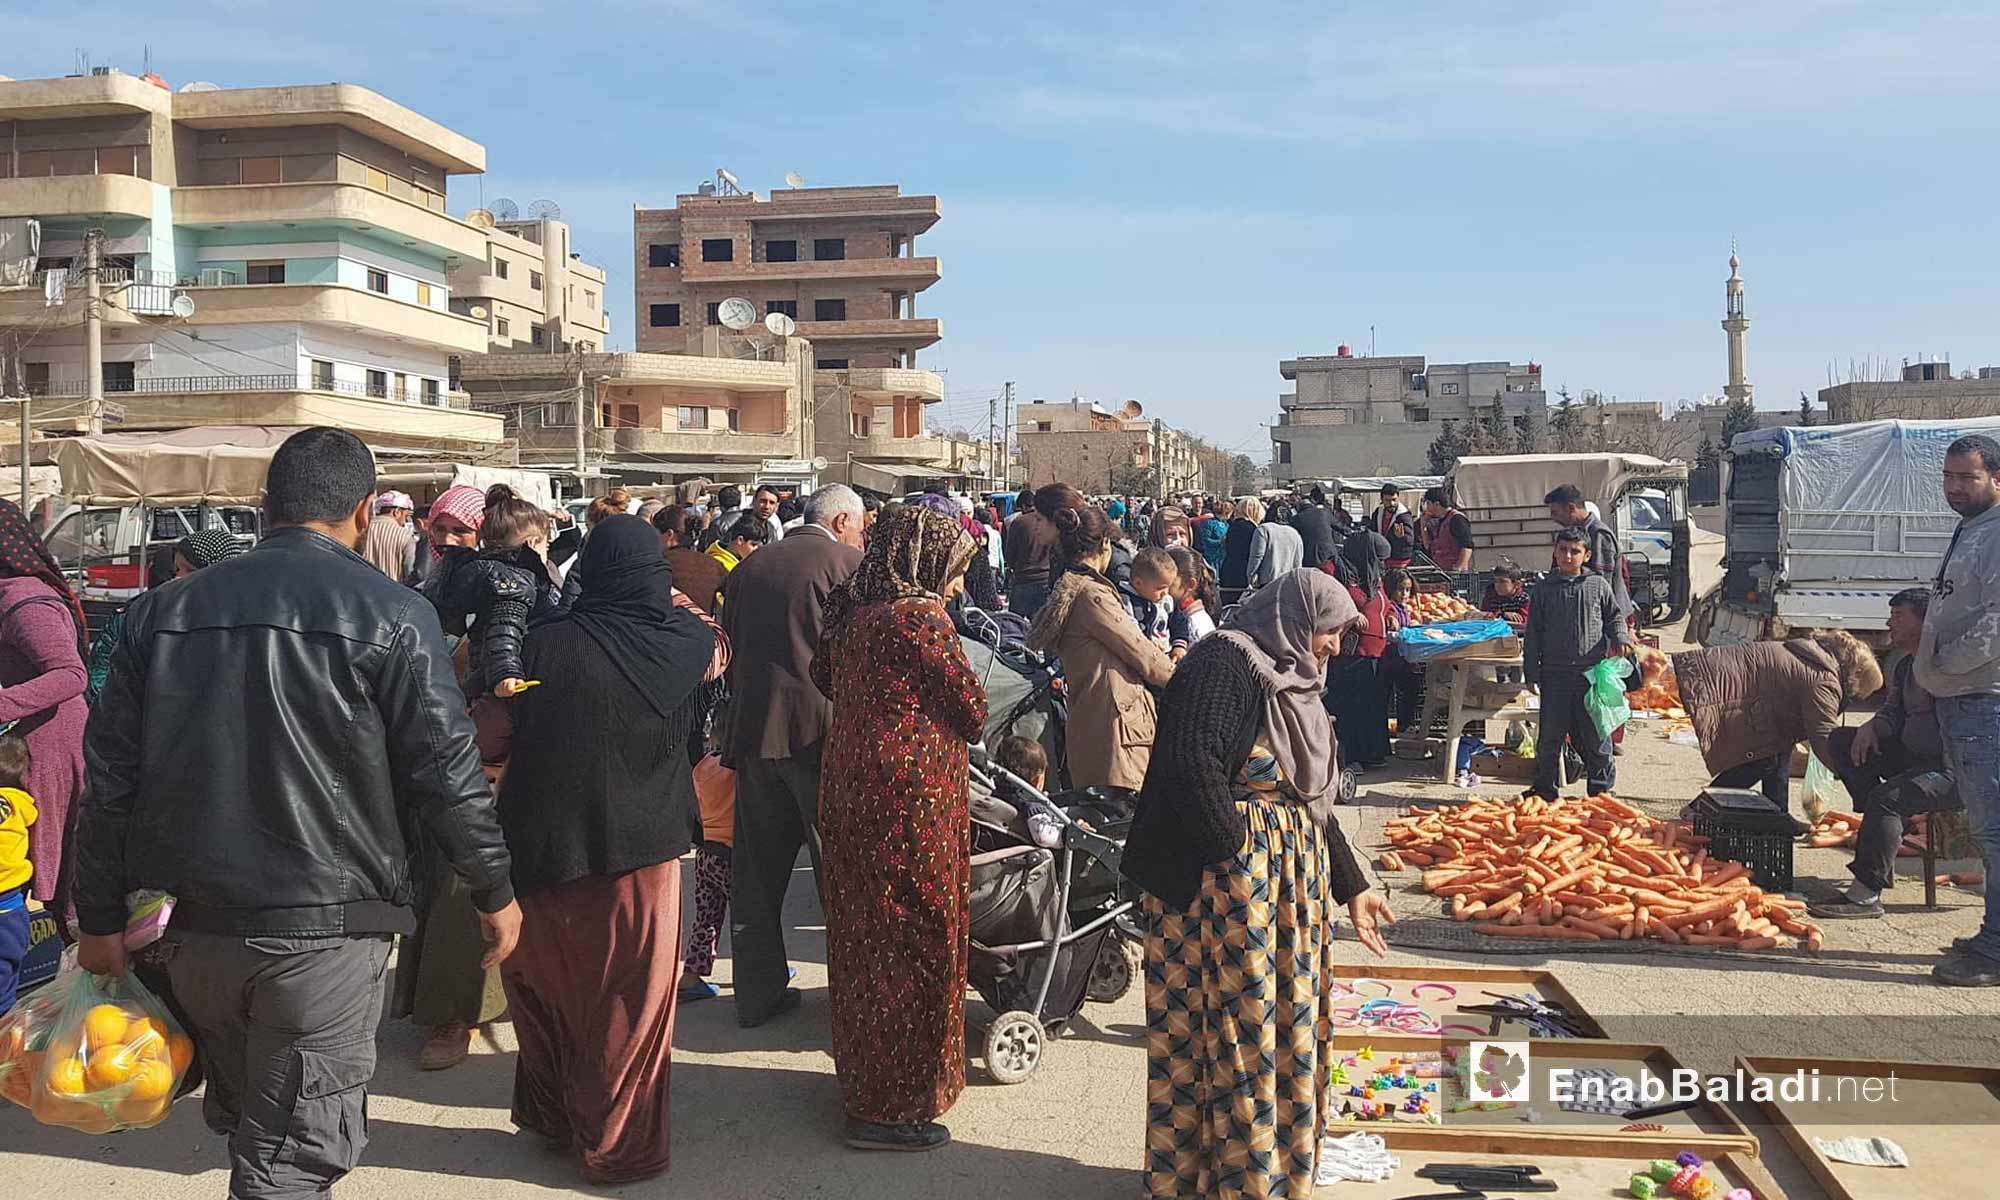 حركة البيع والشراء في سوق حطين في مدينة القامشلي شمالي سوريا - 4 شباط 2018 (عنب بلدي)